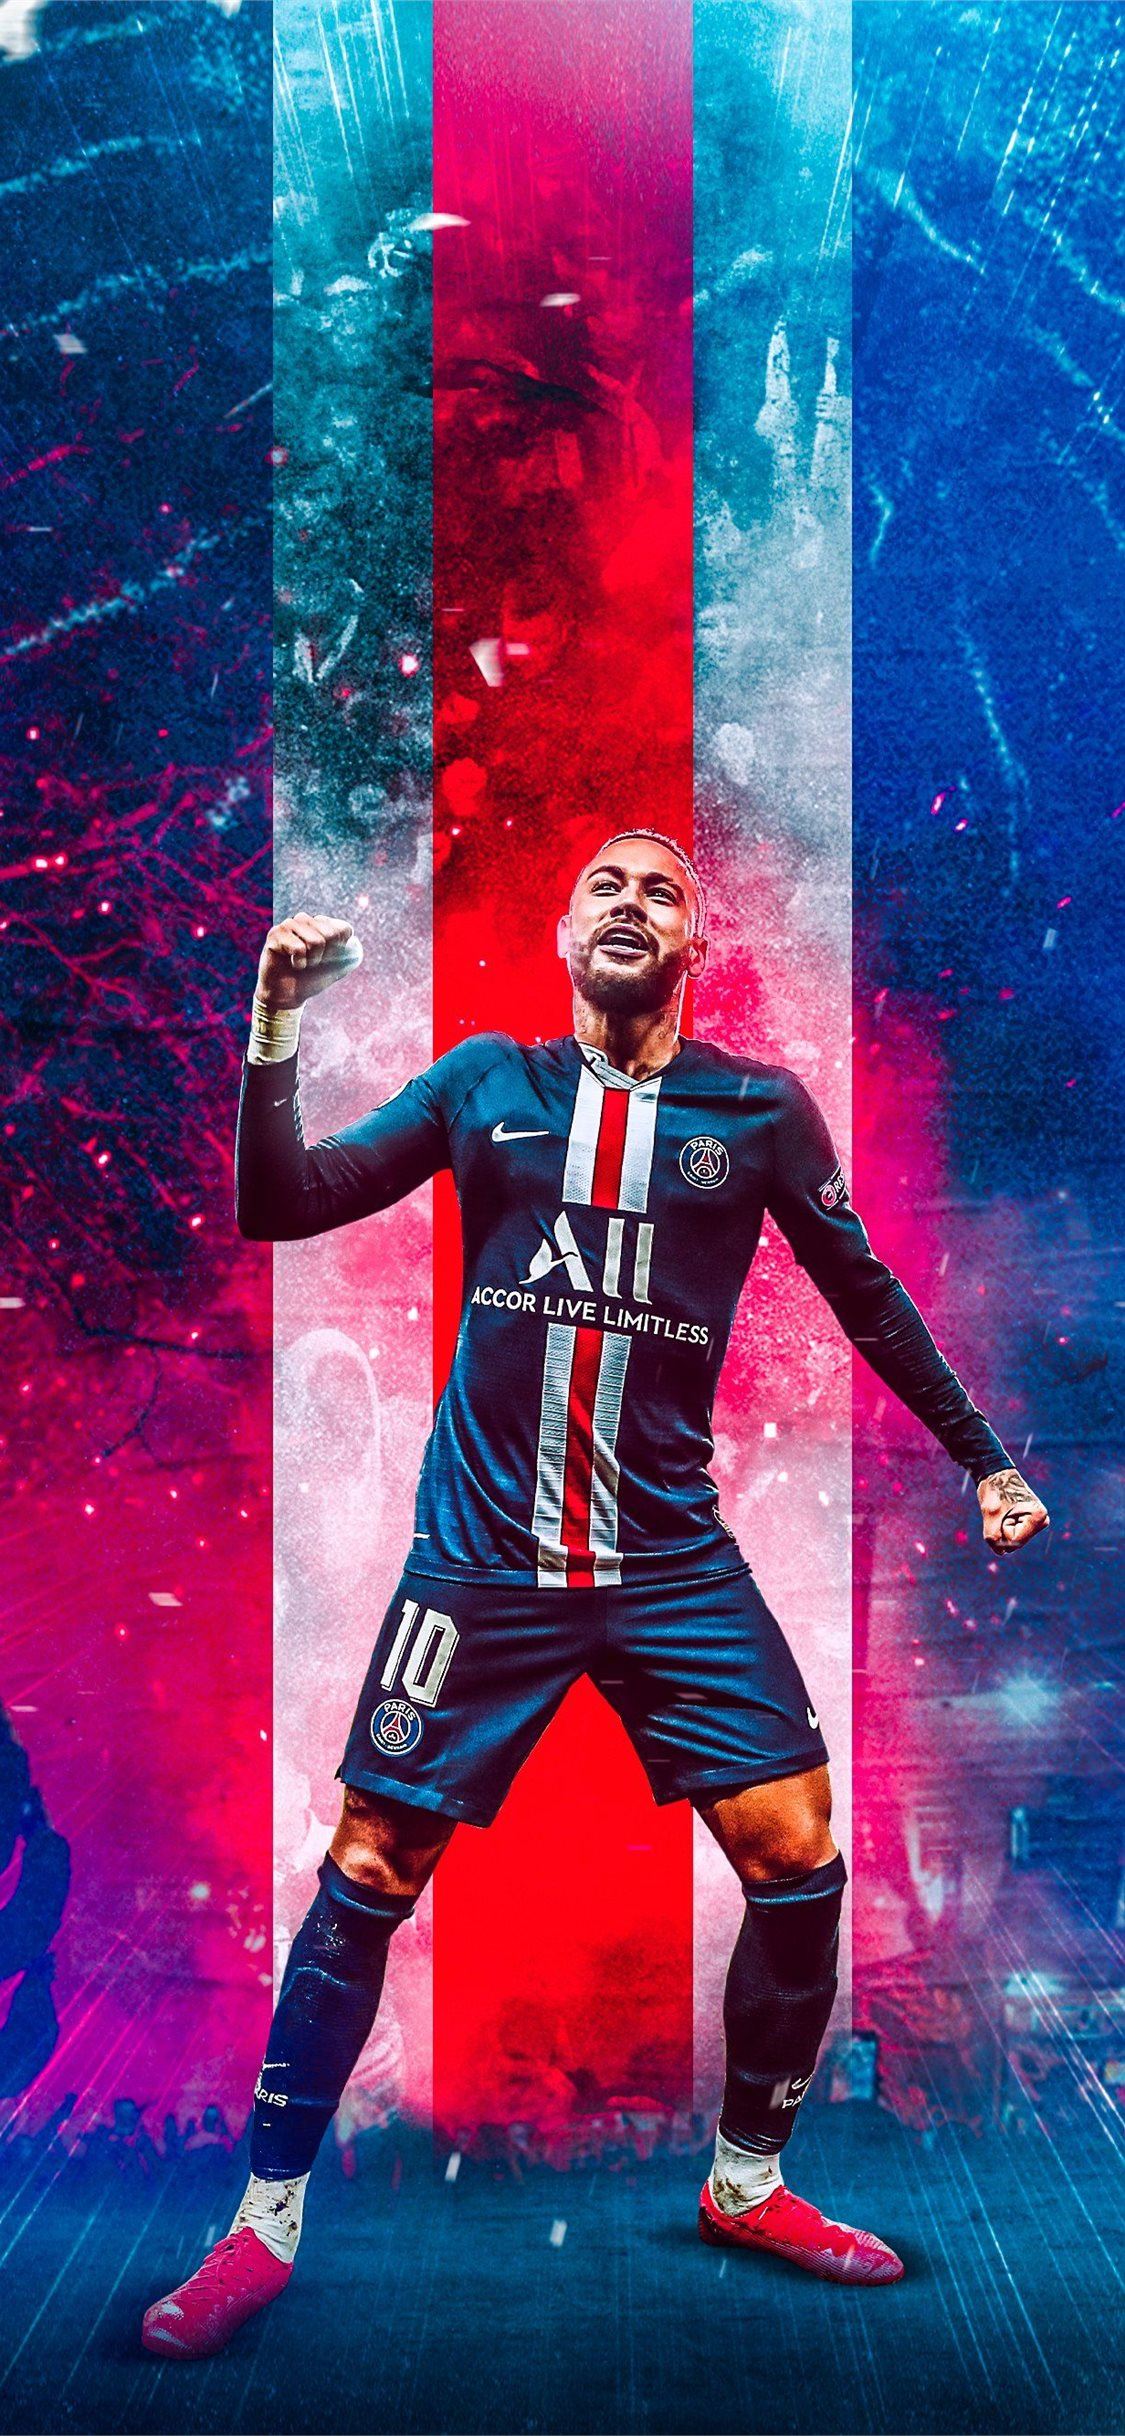 PSG: PSG là một trong những đội bóng hàng đầu của Pháp với đội hình thực lực và đầy tham vọng. Xem hình ảnh về đội bóng này sẽ khiến bạn cảm thấy mãn nhãn và trân trọng những nỗ lực của các cầu thủ để đưa đội bóng đến những thành công mới.